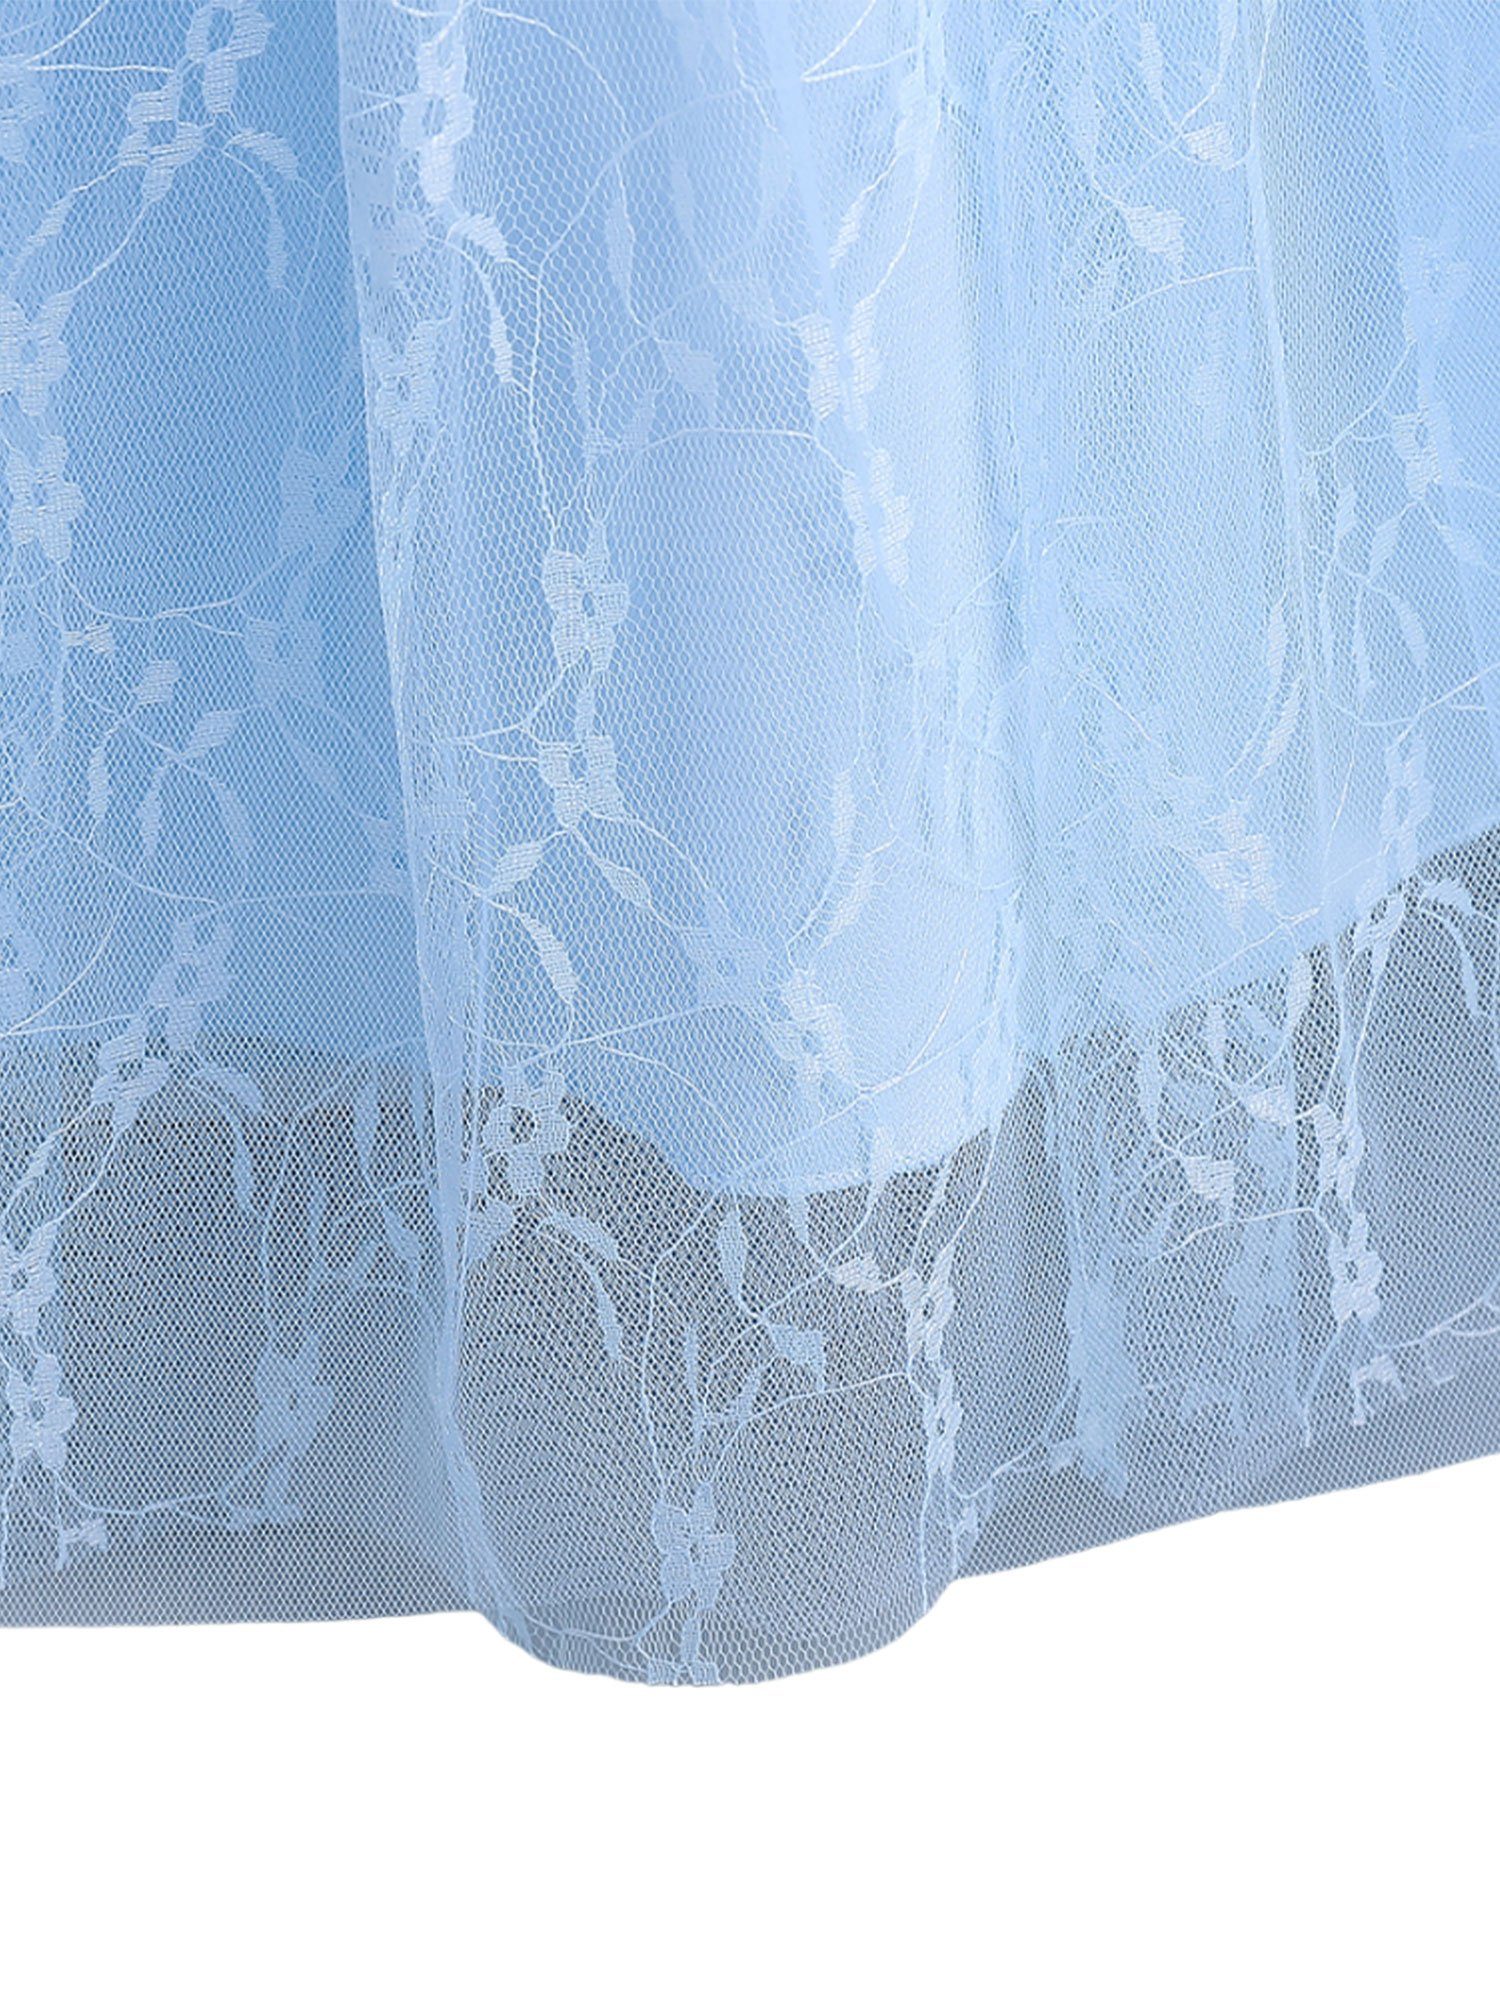 Bodenlanges Blau Spitze Abendkleid mit LAPA Einfacher Partykleid Kleid Mädchen